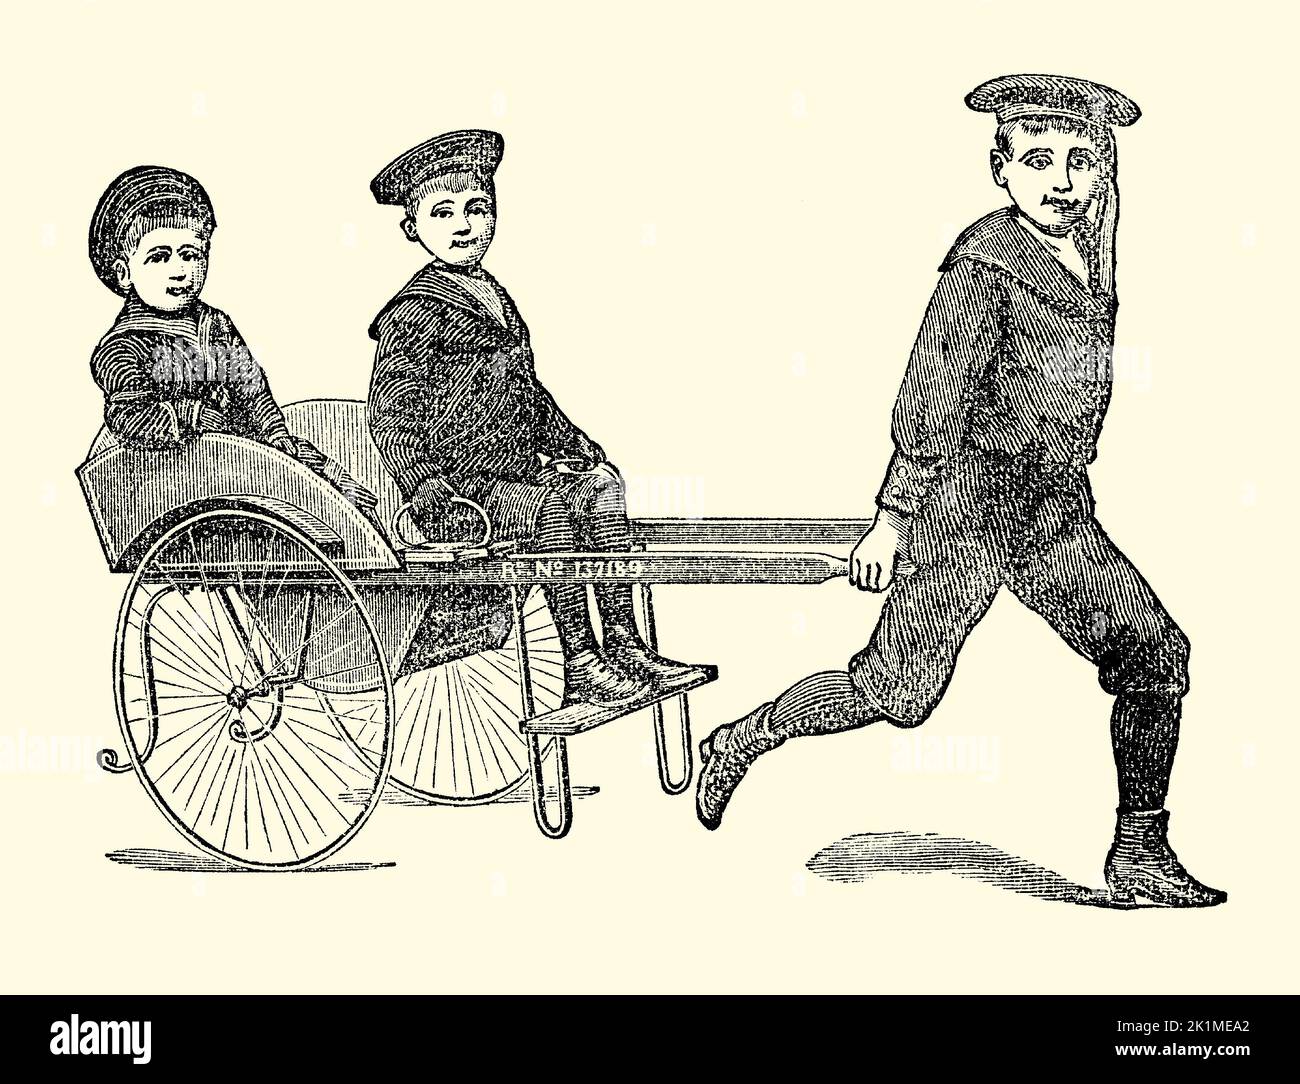 Un antiguo grabado victoriano de un carruaje “Victor”, realizado por Marris y Cooke of Grimsby, East Yorkshire, Inglaterra, Reino Unido. Es de un libro de 1890. El carro de dos plazas tirado a mano estaba dirigido a los niños. Foto de stock